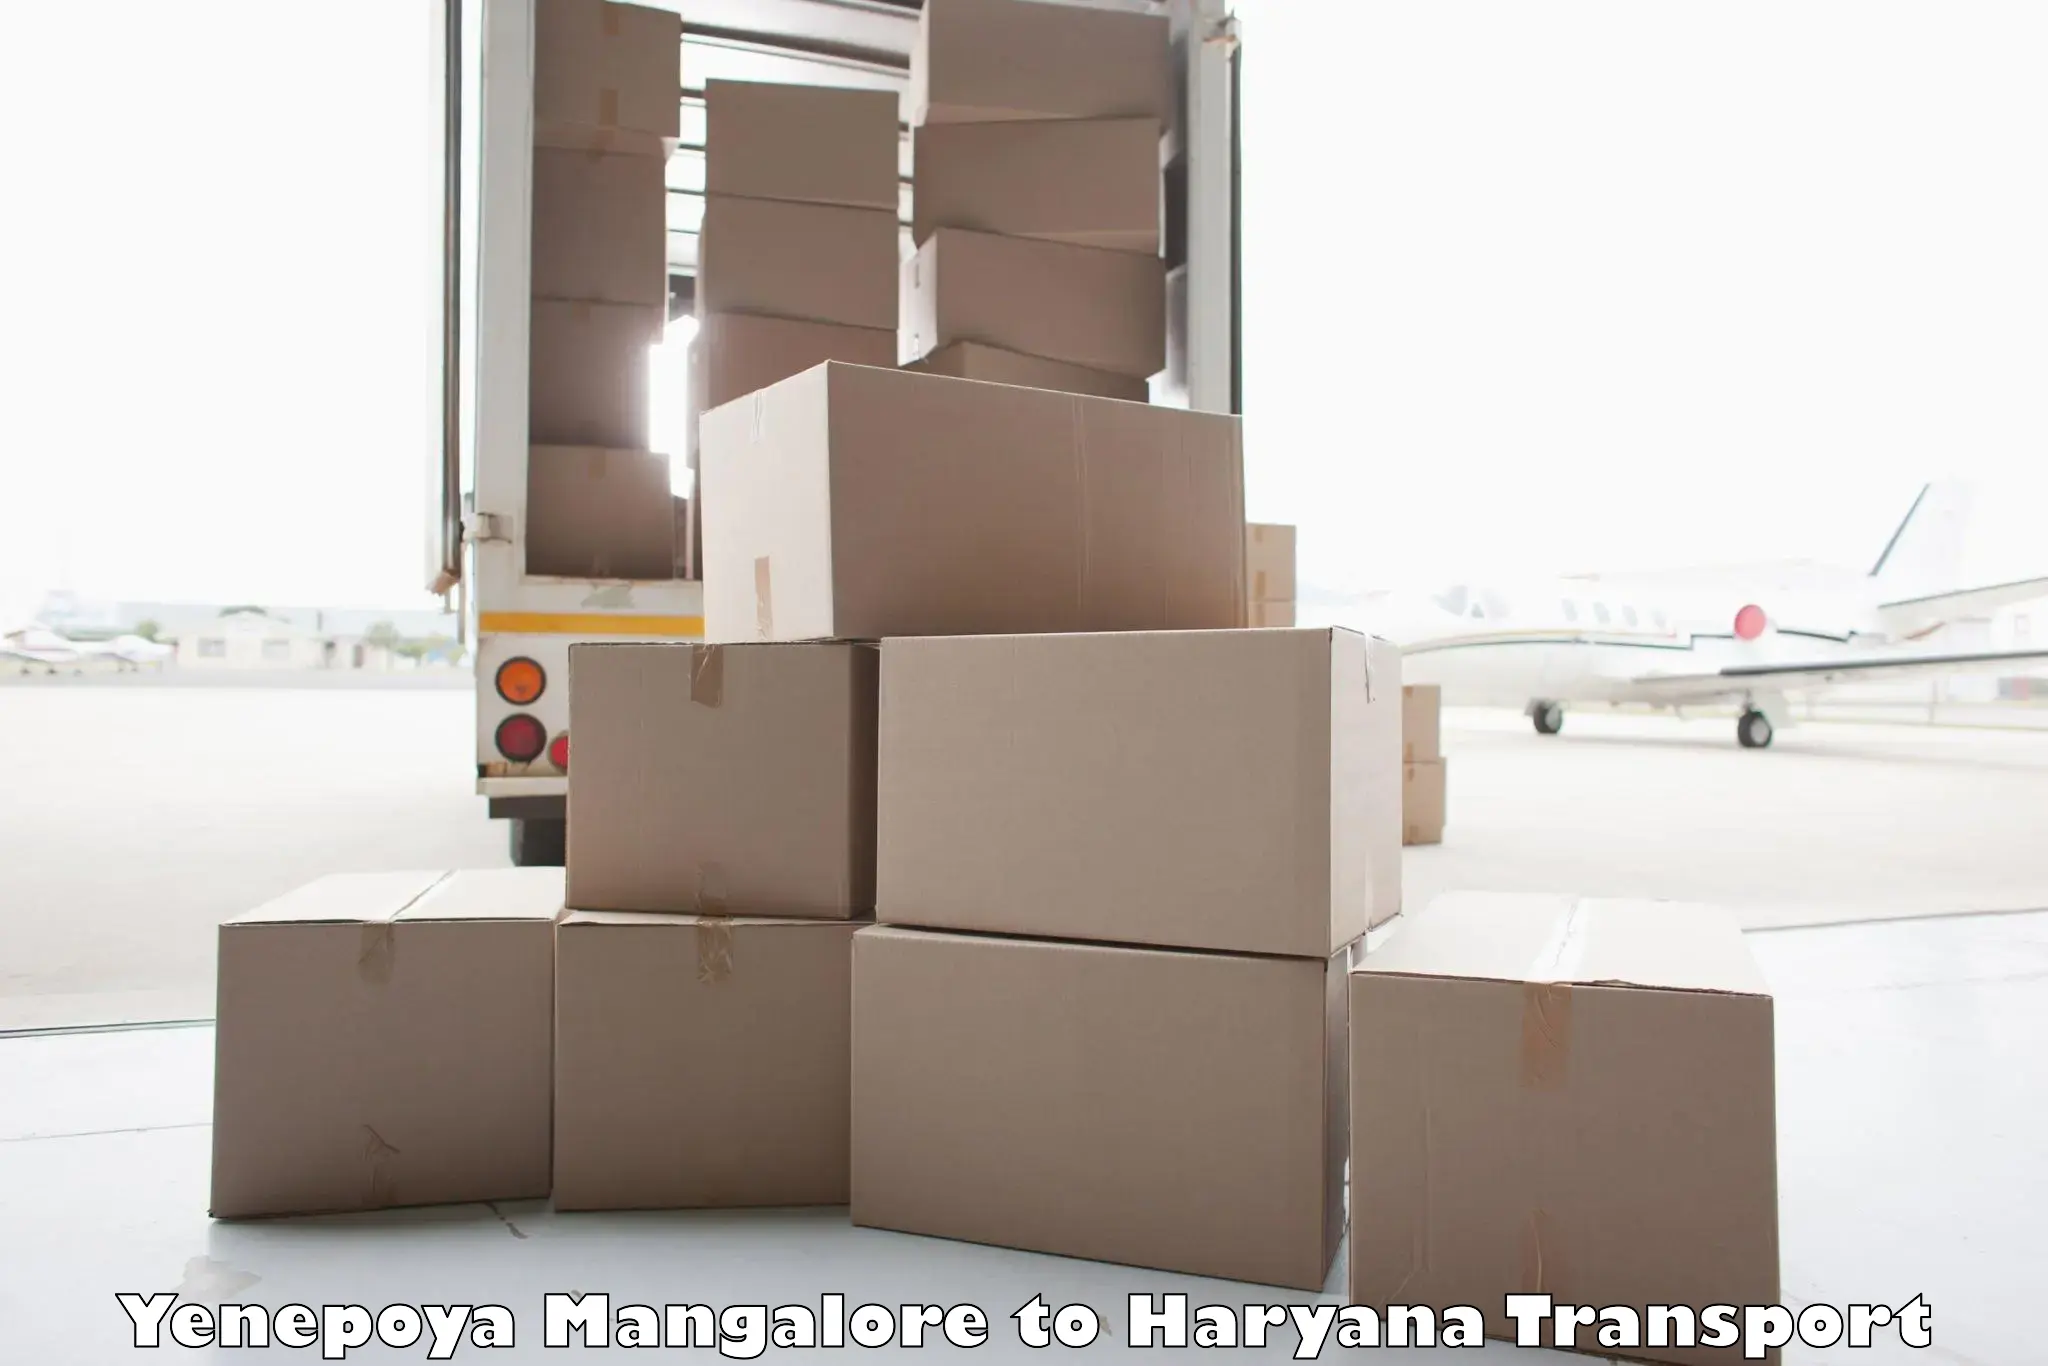 Daily parcel service transport Yenepoya Mangalore to Gurgaon